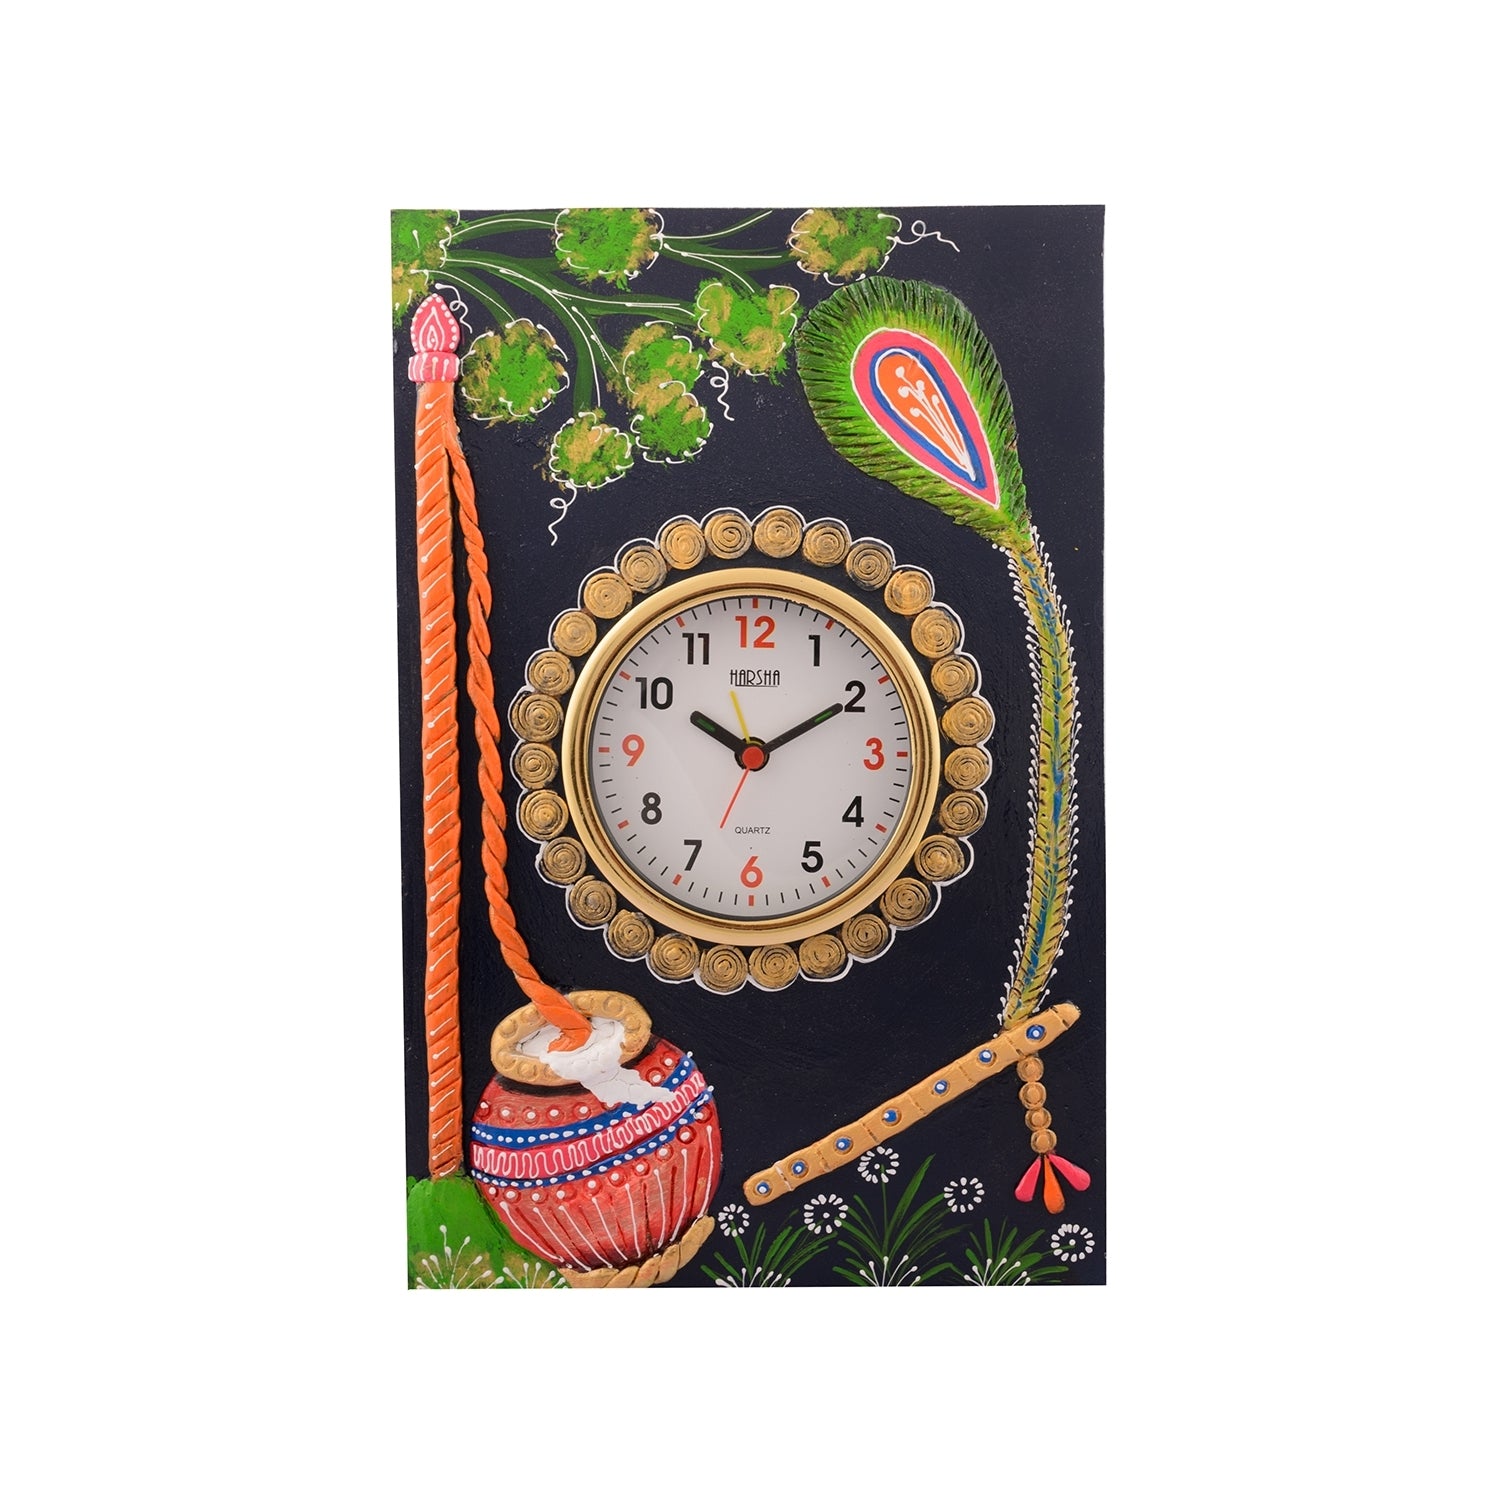 Wooden Papier Mache Matki Design Artistic Handcrafted Wall Clock